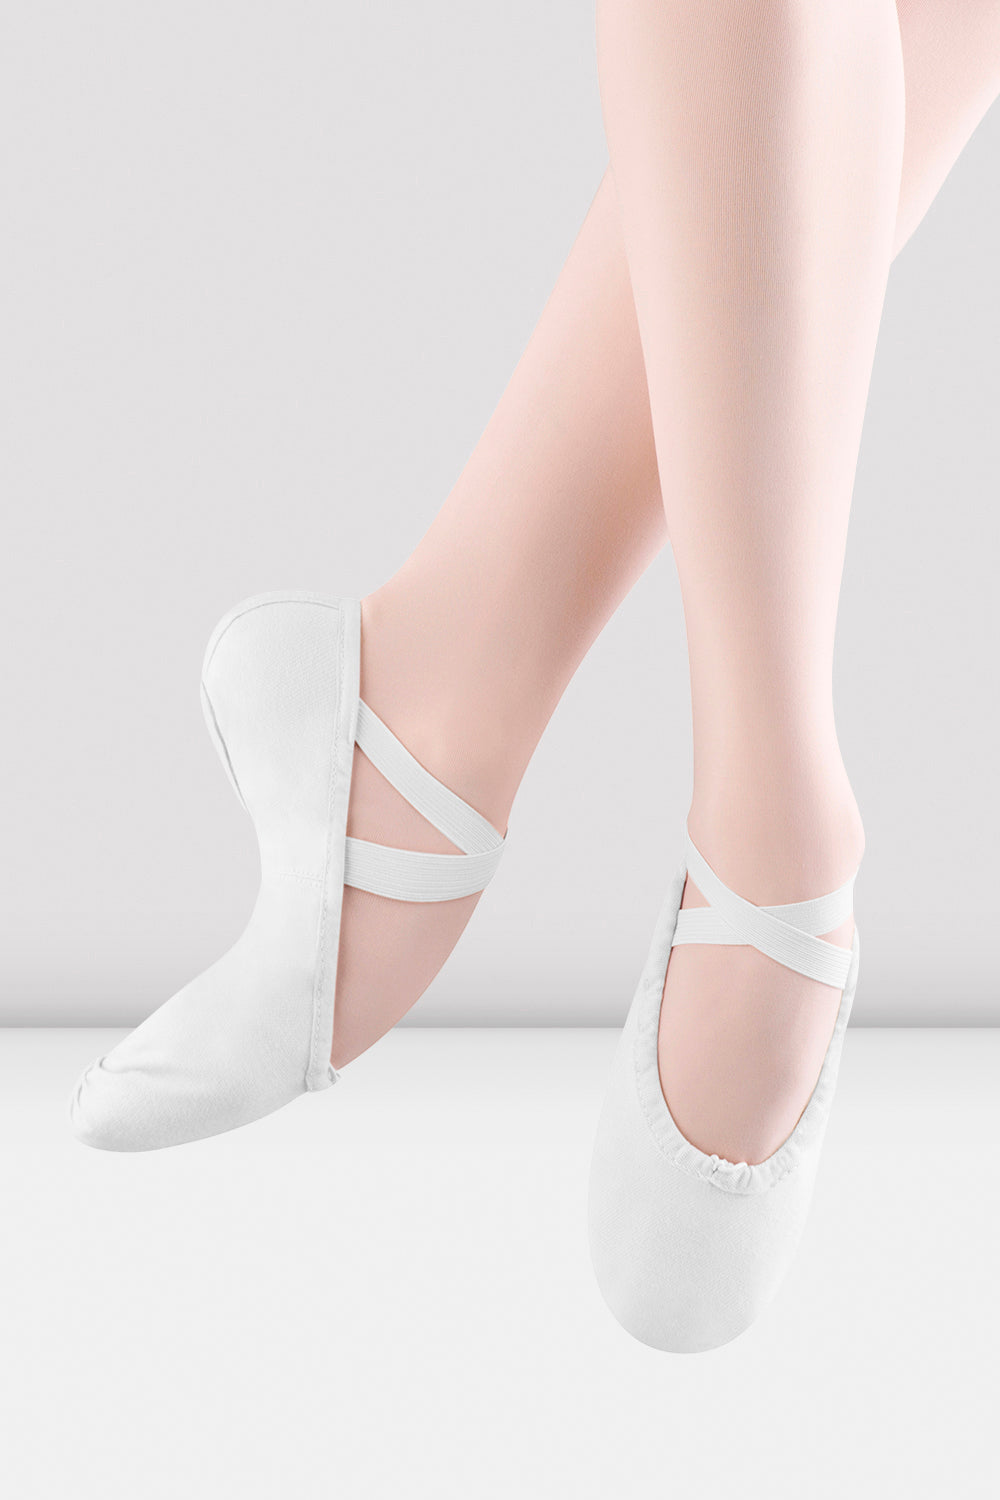 BLOCH Ladies Pump Canvas Ballet Shoes, White Canvas